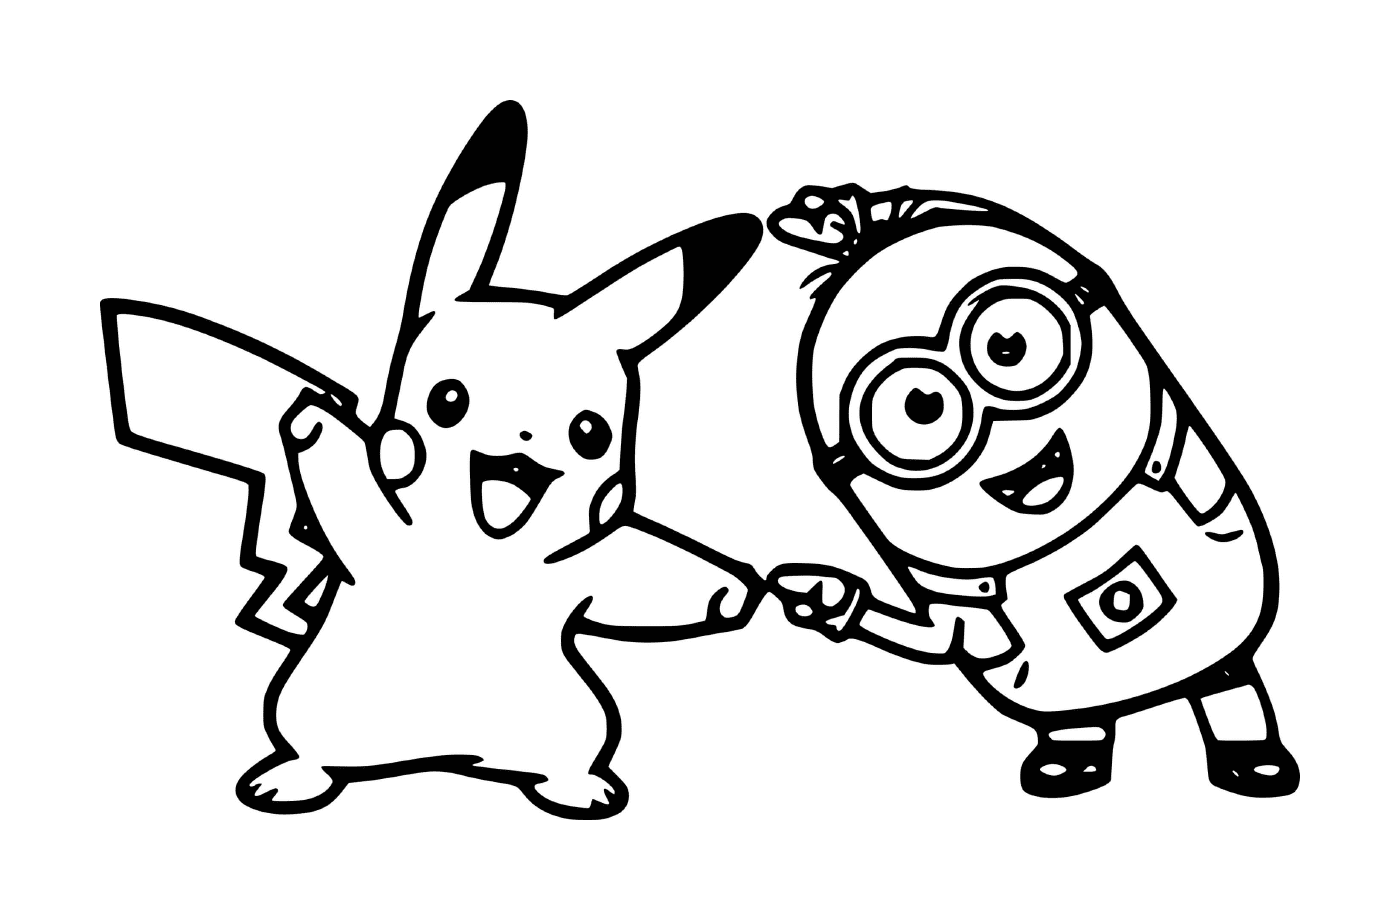  Minion und Pikachu zusammen 